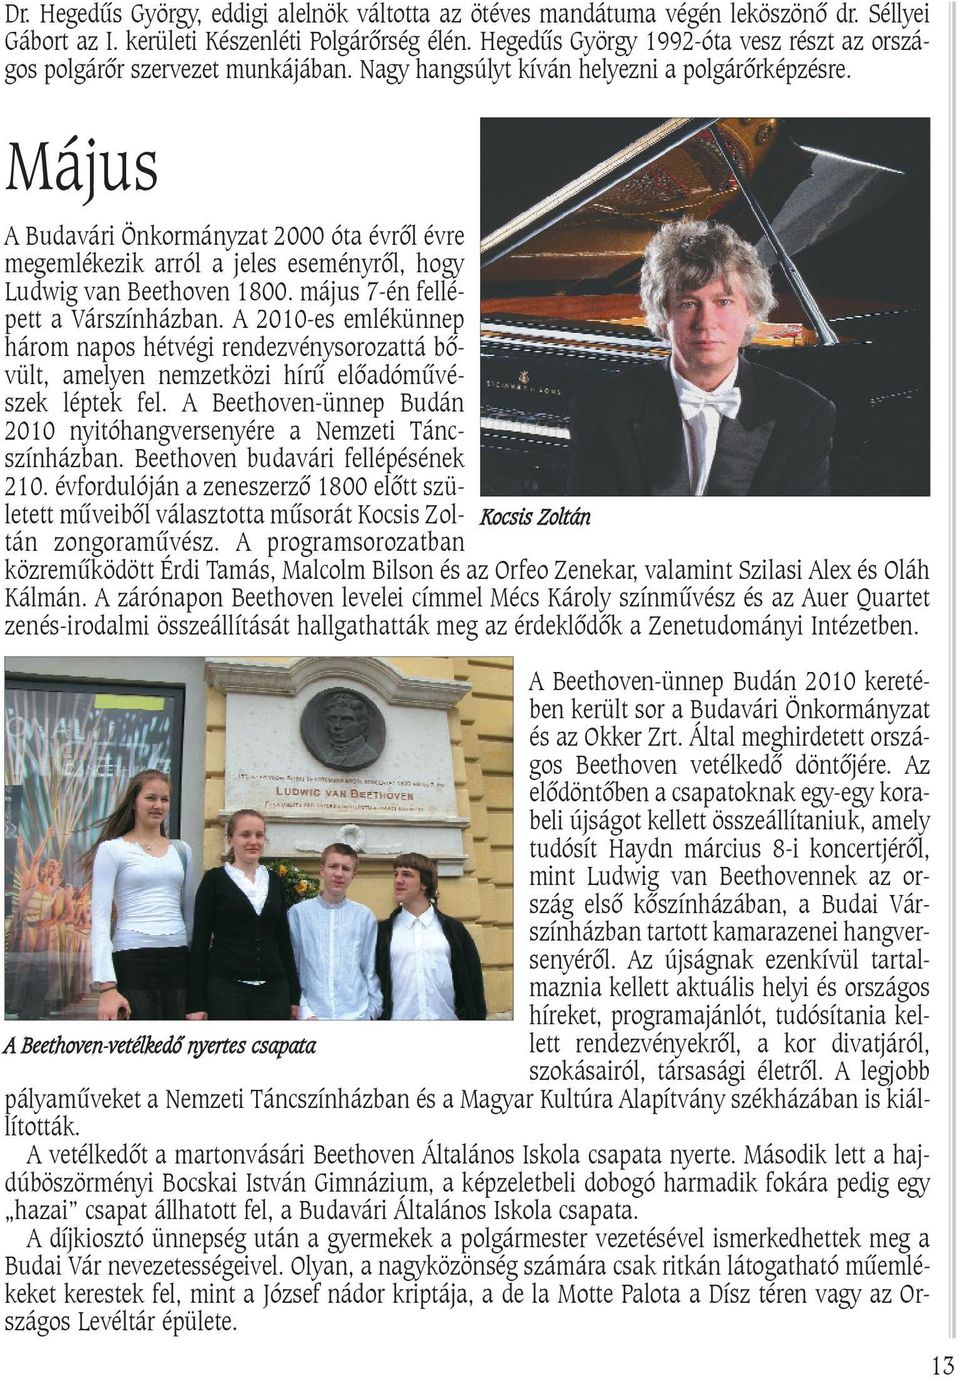 Május A Budavári Önkormányzat 2000 óta évrõl évre megemlékezik arról a jeles eseményrõl, hogy Ludwig van Beethoven 1800. május 7-én fellépett a Várszínházban.